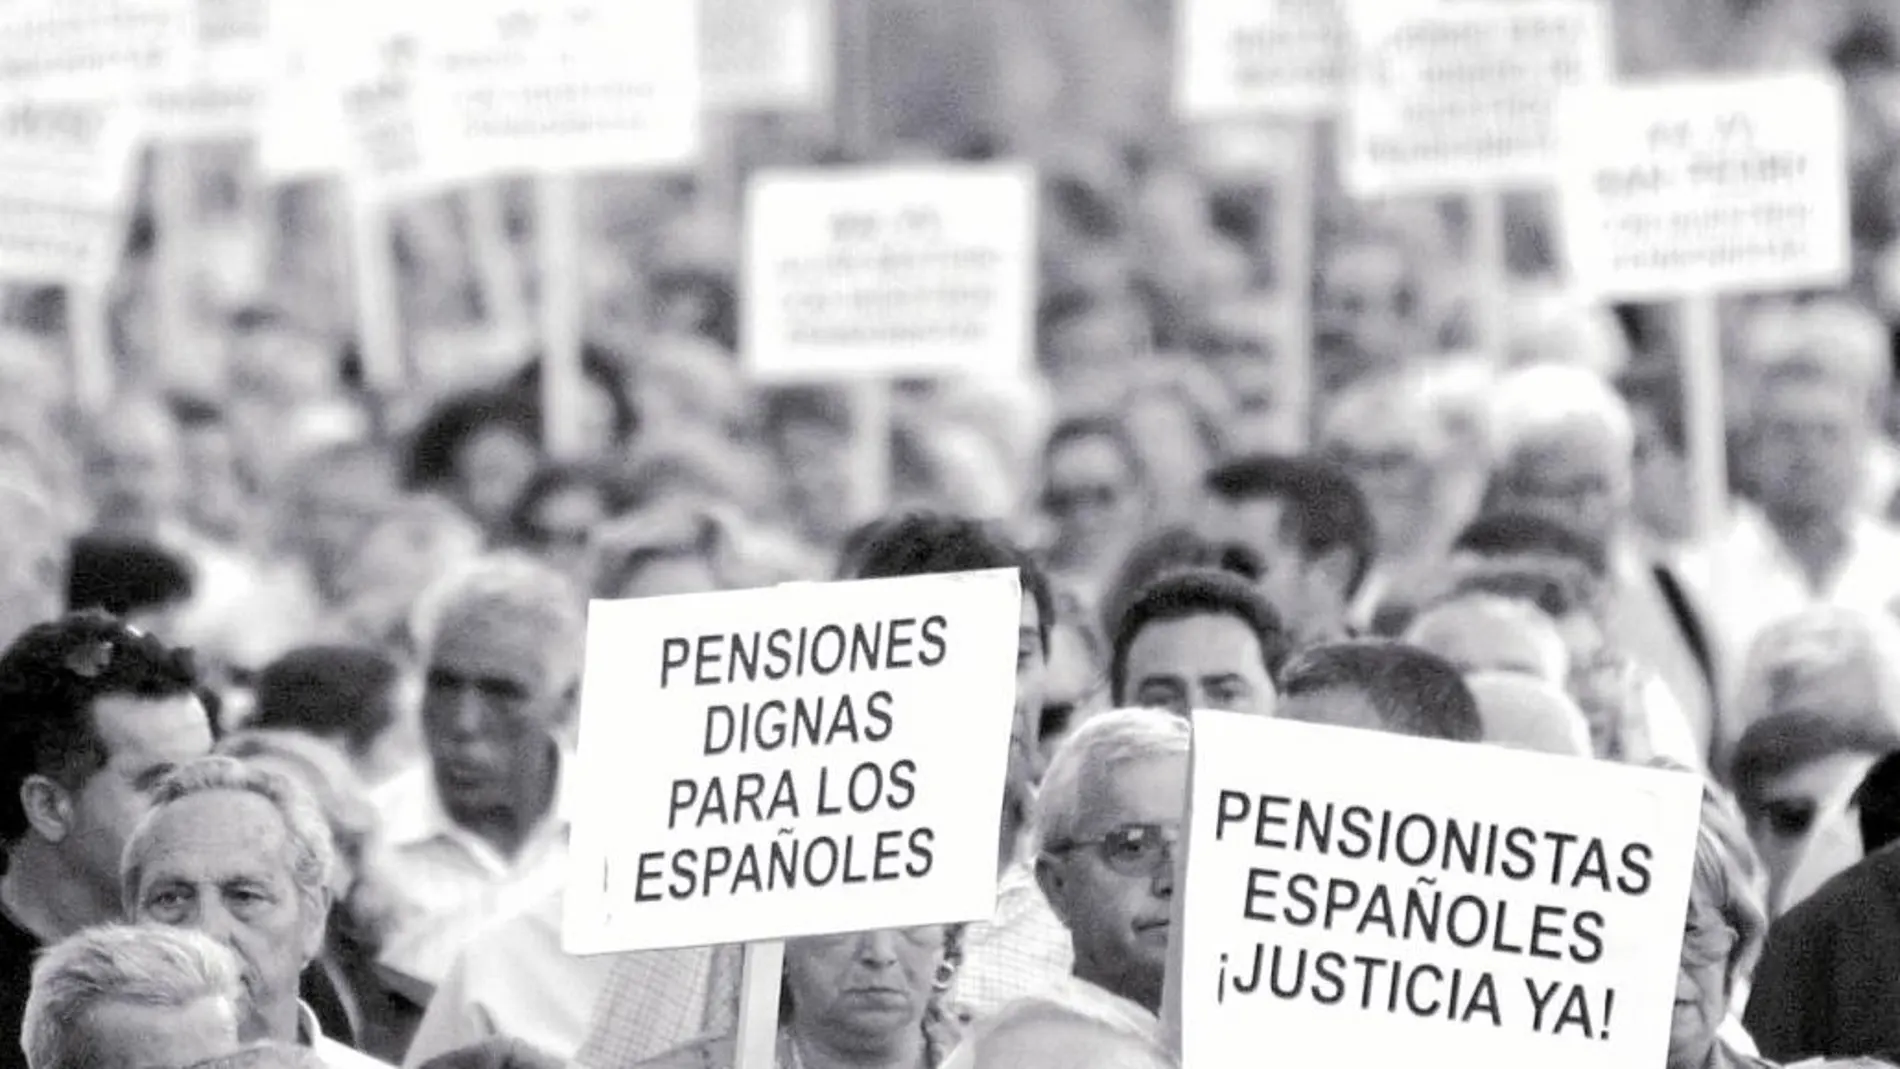 El FMI considera que la sostenibilidad de las pensiones es uno de los principales factores de tensión fiscal